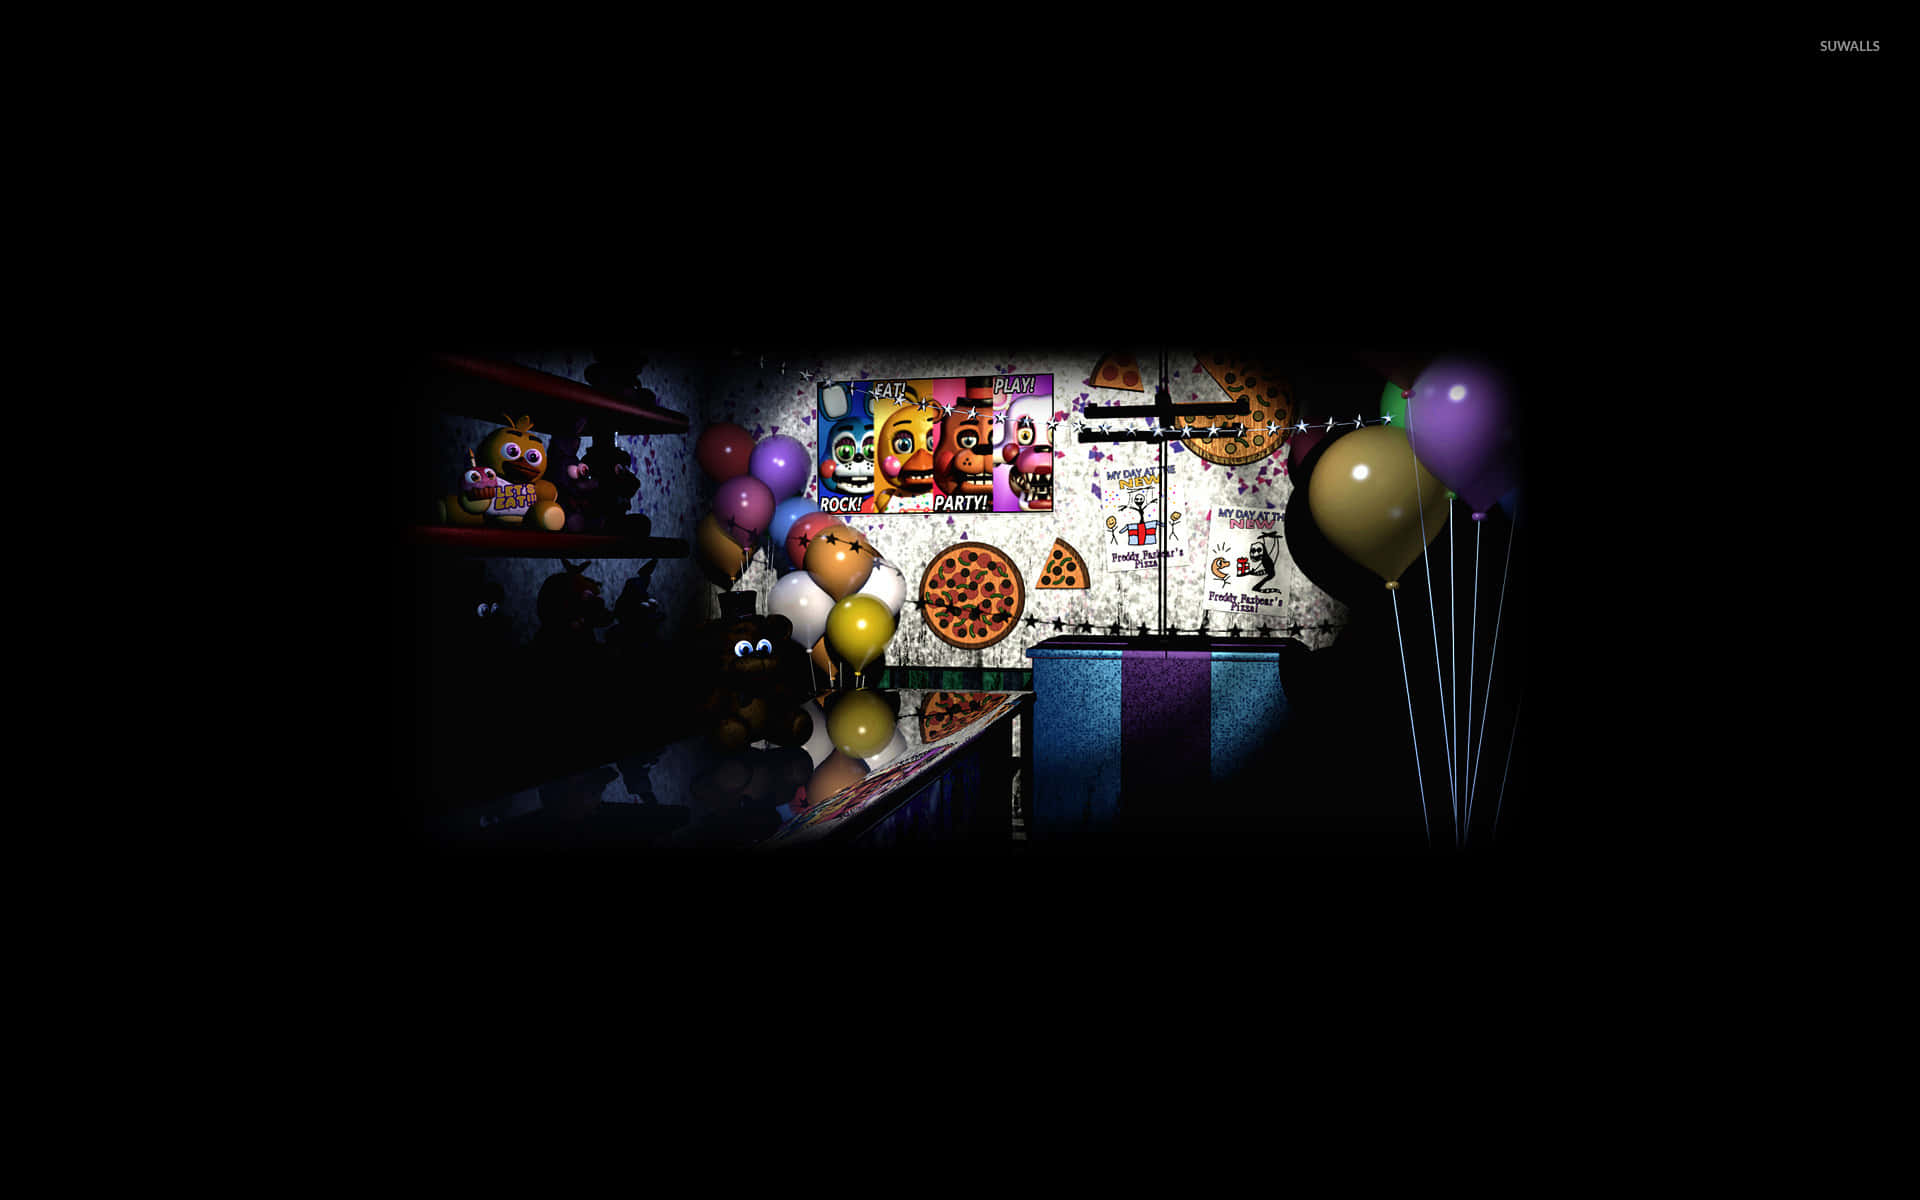 Et mørkt rum med balloner og dekorationer Wallpaper